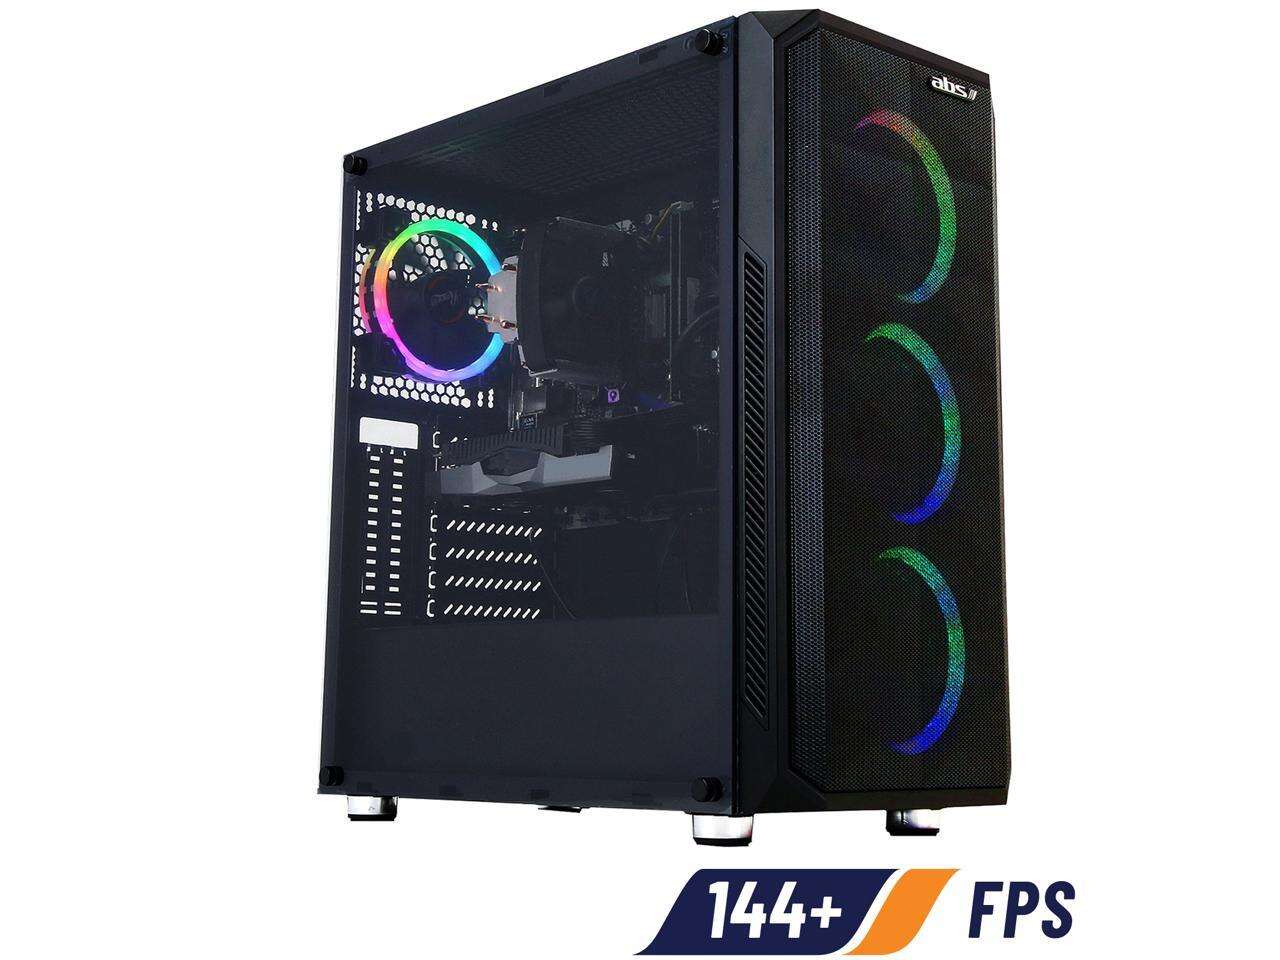 ABS Mage M - Ryzen 5 3600 - GeForce RTX 2070 Super - 16GB DDR4 3000MHz - 512GB SSD - Gaming Desktop PC